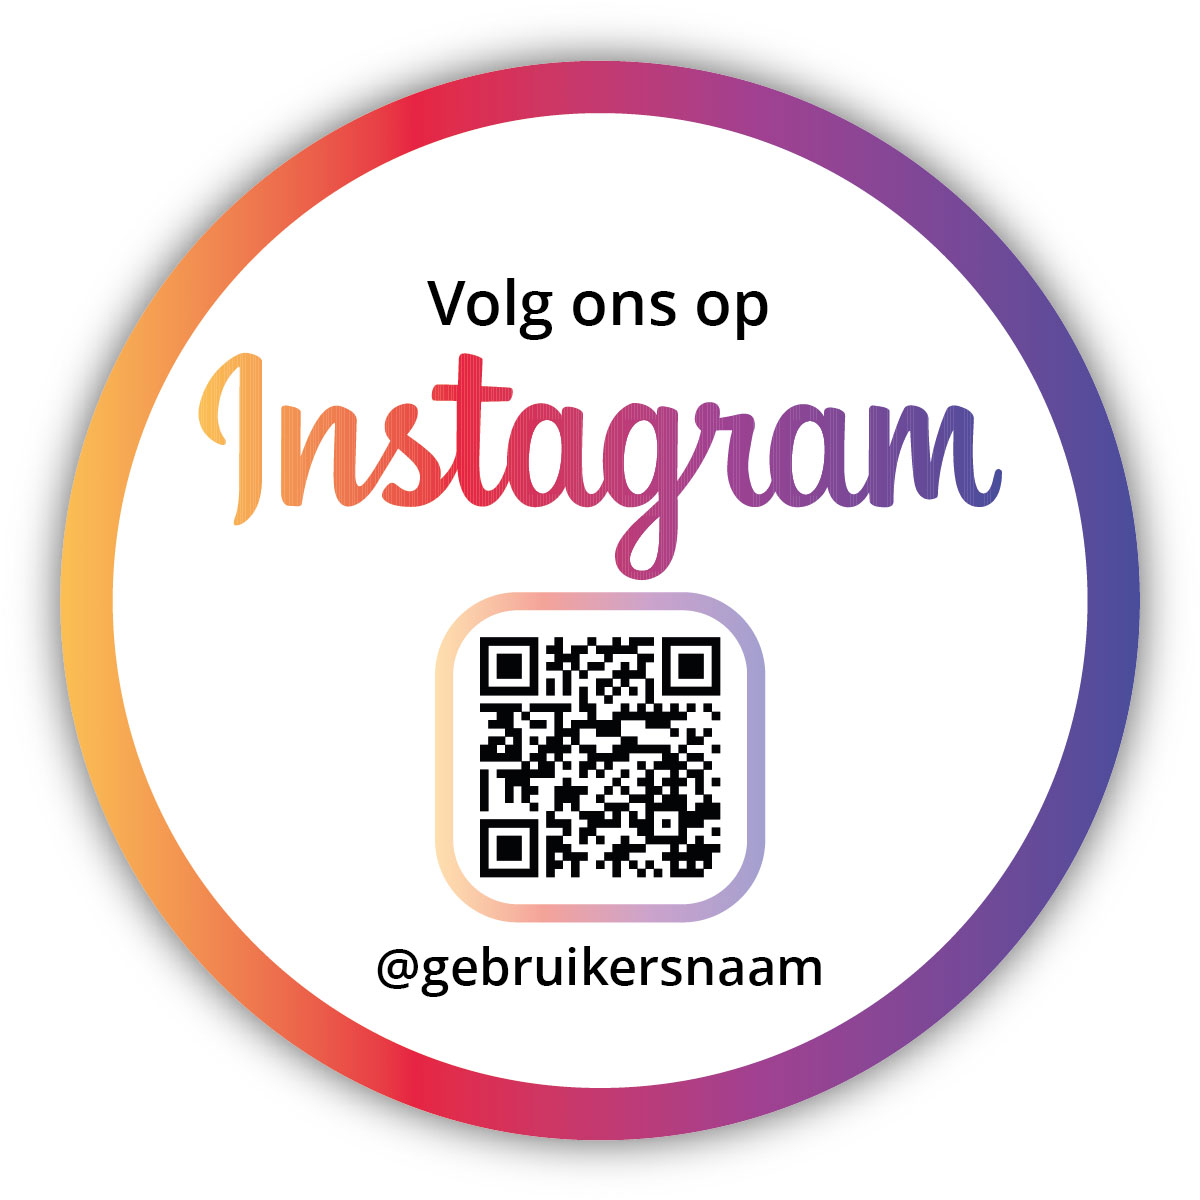 Volg ons op Instagram Sticker Schoon